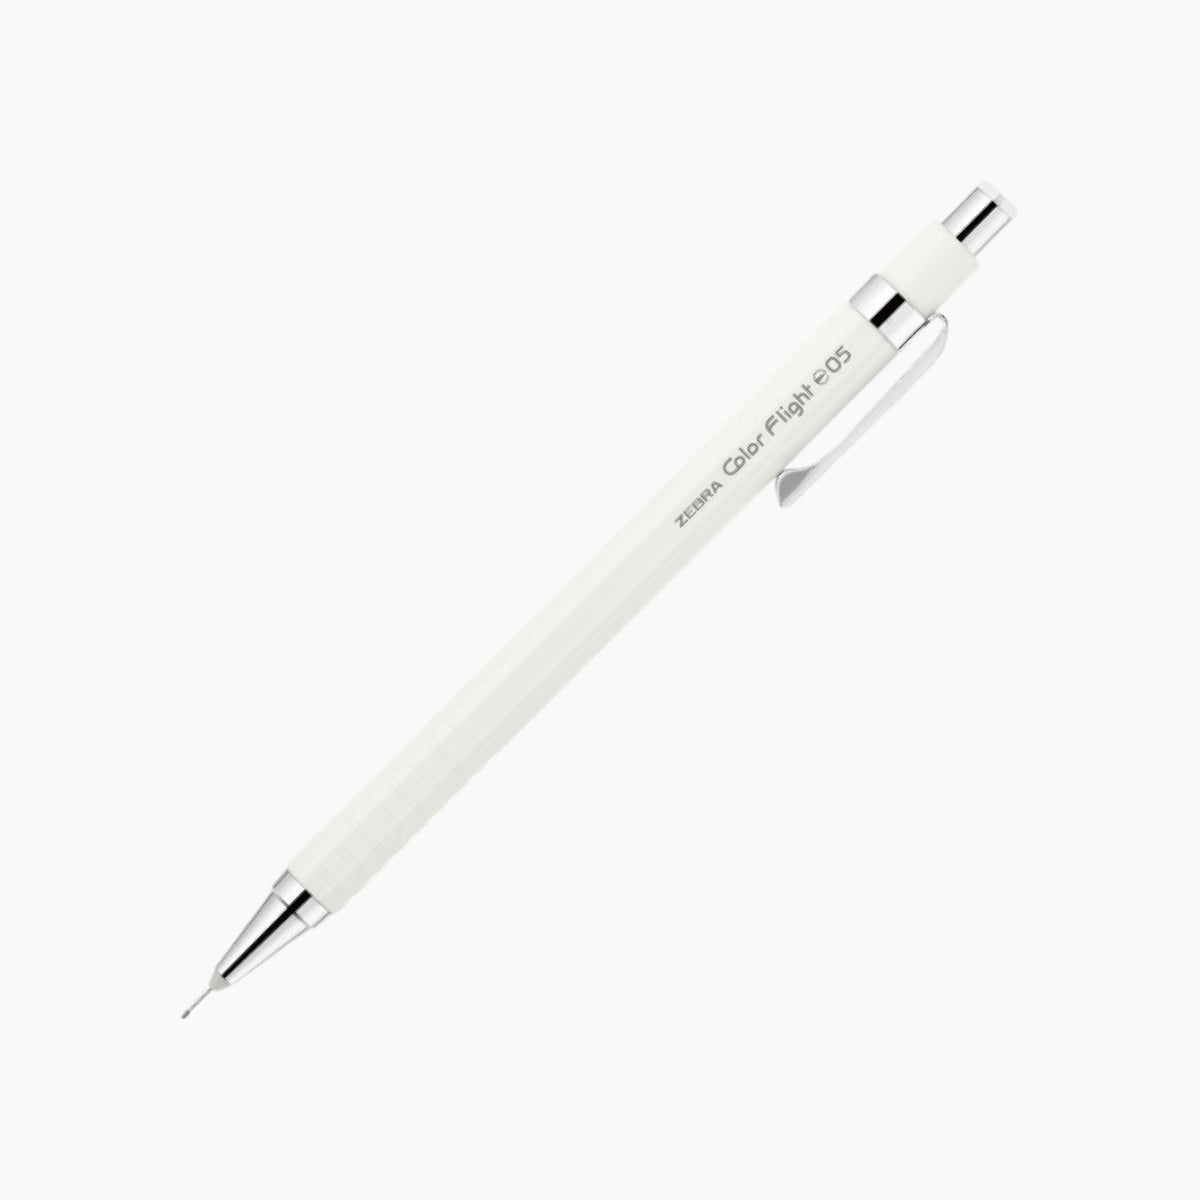 Zebra - Mechanical Pencil - Color Flight Pastel - 0.5mm - White <Outgoing>